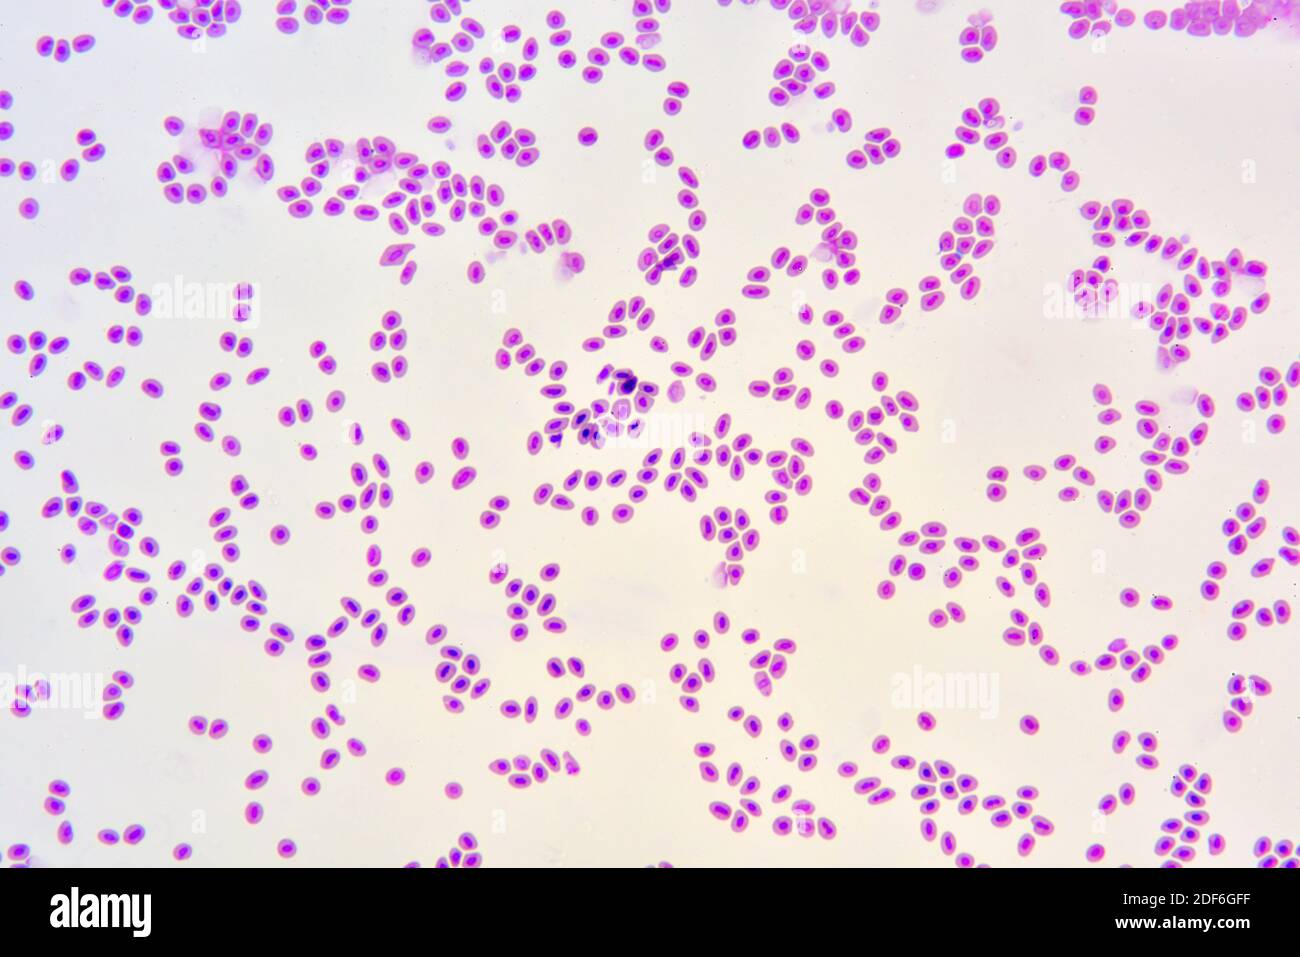 Sangre de peces con eritrocitos nucleados. Microscopio óptico X200. Foto de stock